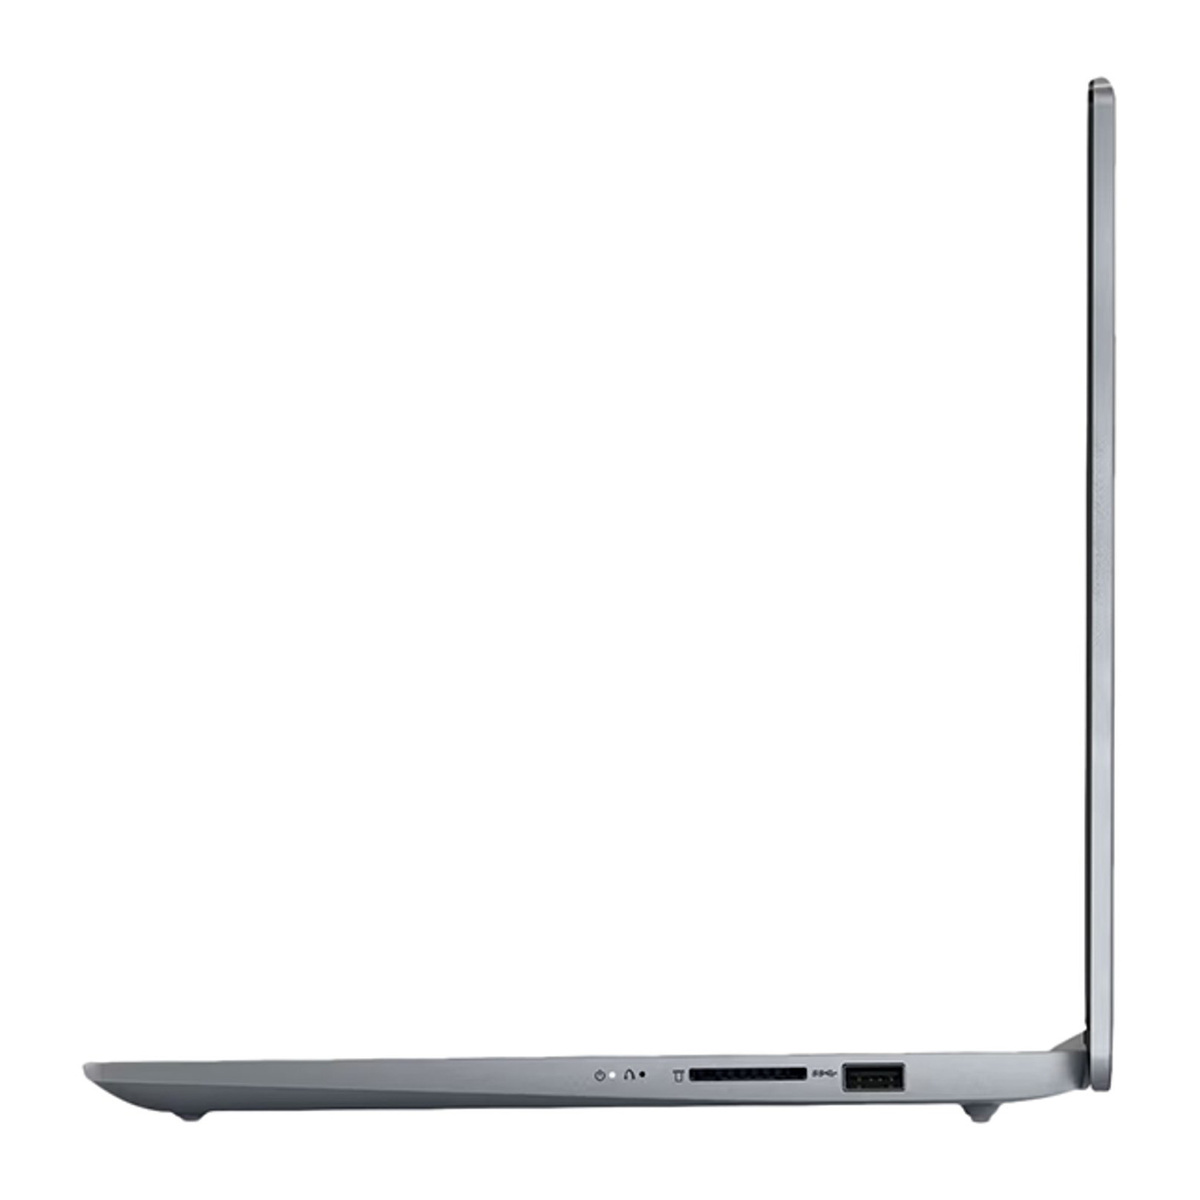 Lenovo Ideapad Slim 3 Laptop, 14 inches FHD Display, 12th Gen, Intel Core i5-12450H, 8 GB RAM, 512 GB SSD, Windows 11, Grey, 83EQ000EAX